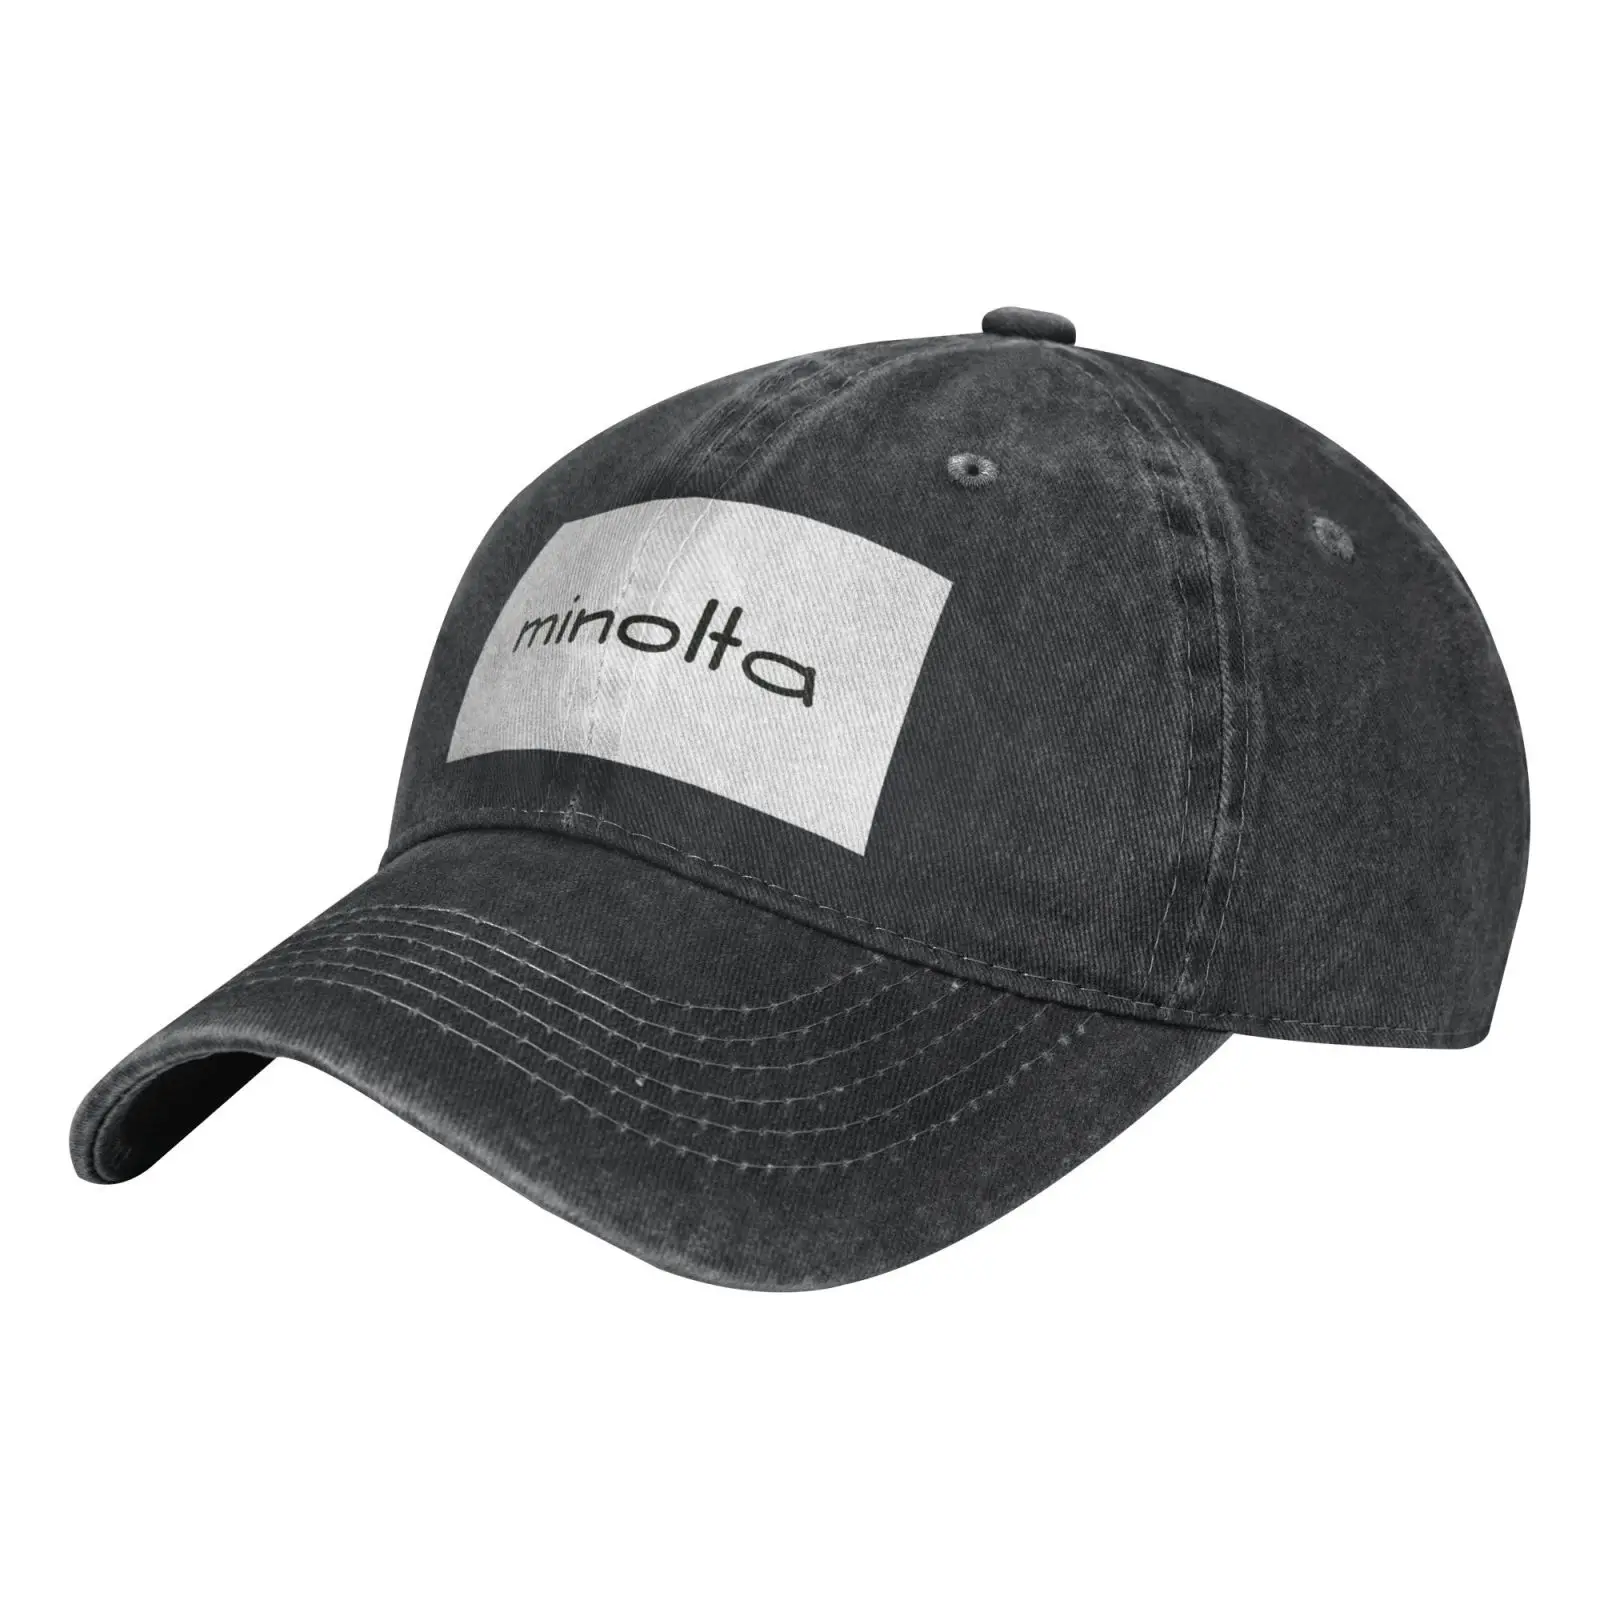 

Minolta 2111 Cap Men's Panama Hat Trucker Cap Women's Cap Cap For Girls Sun Hats Mens Cap Women's Bucket Hat Brazil Summer Hat